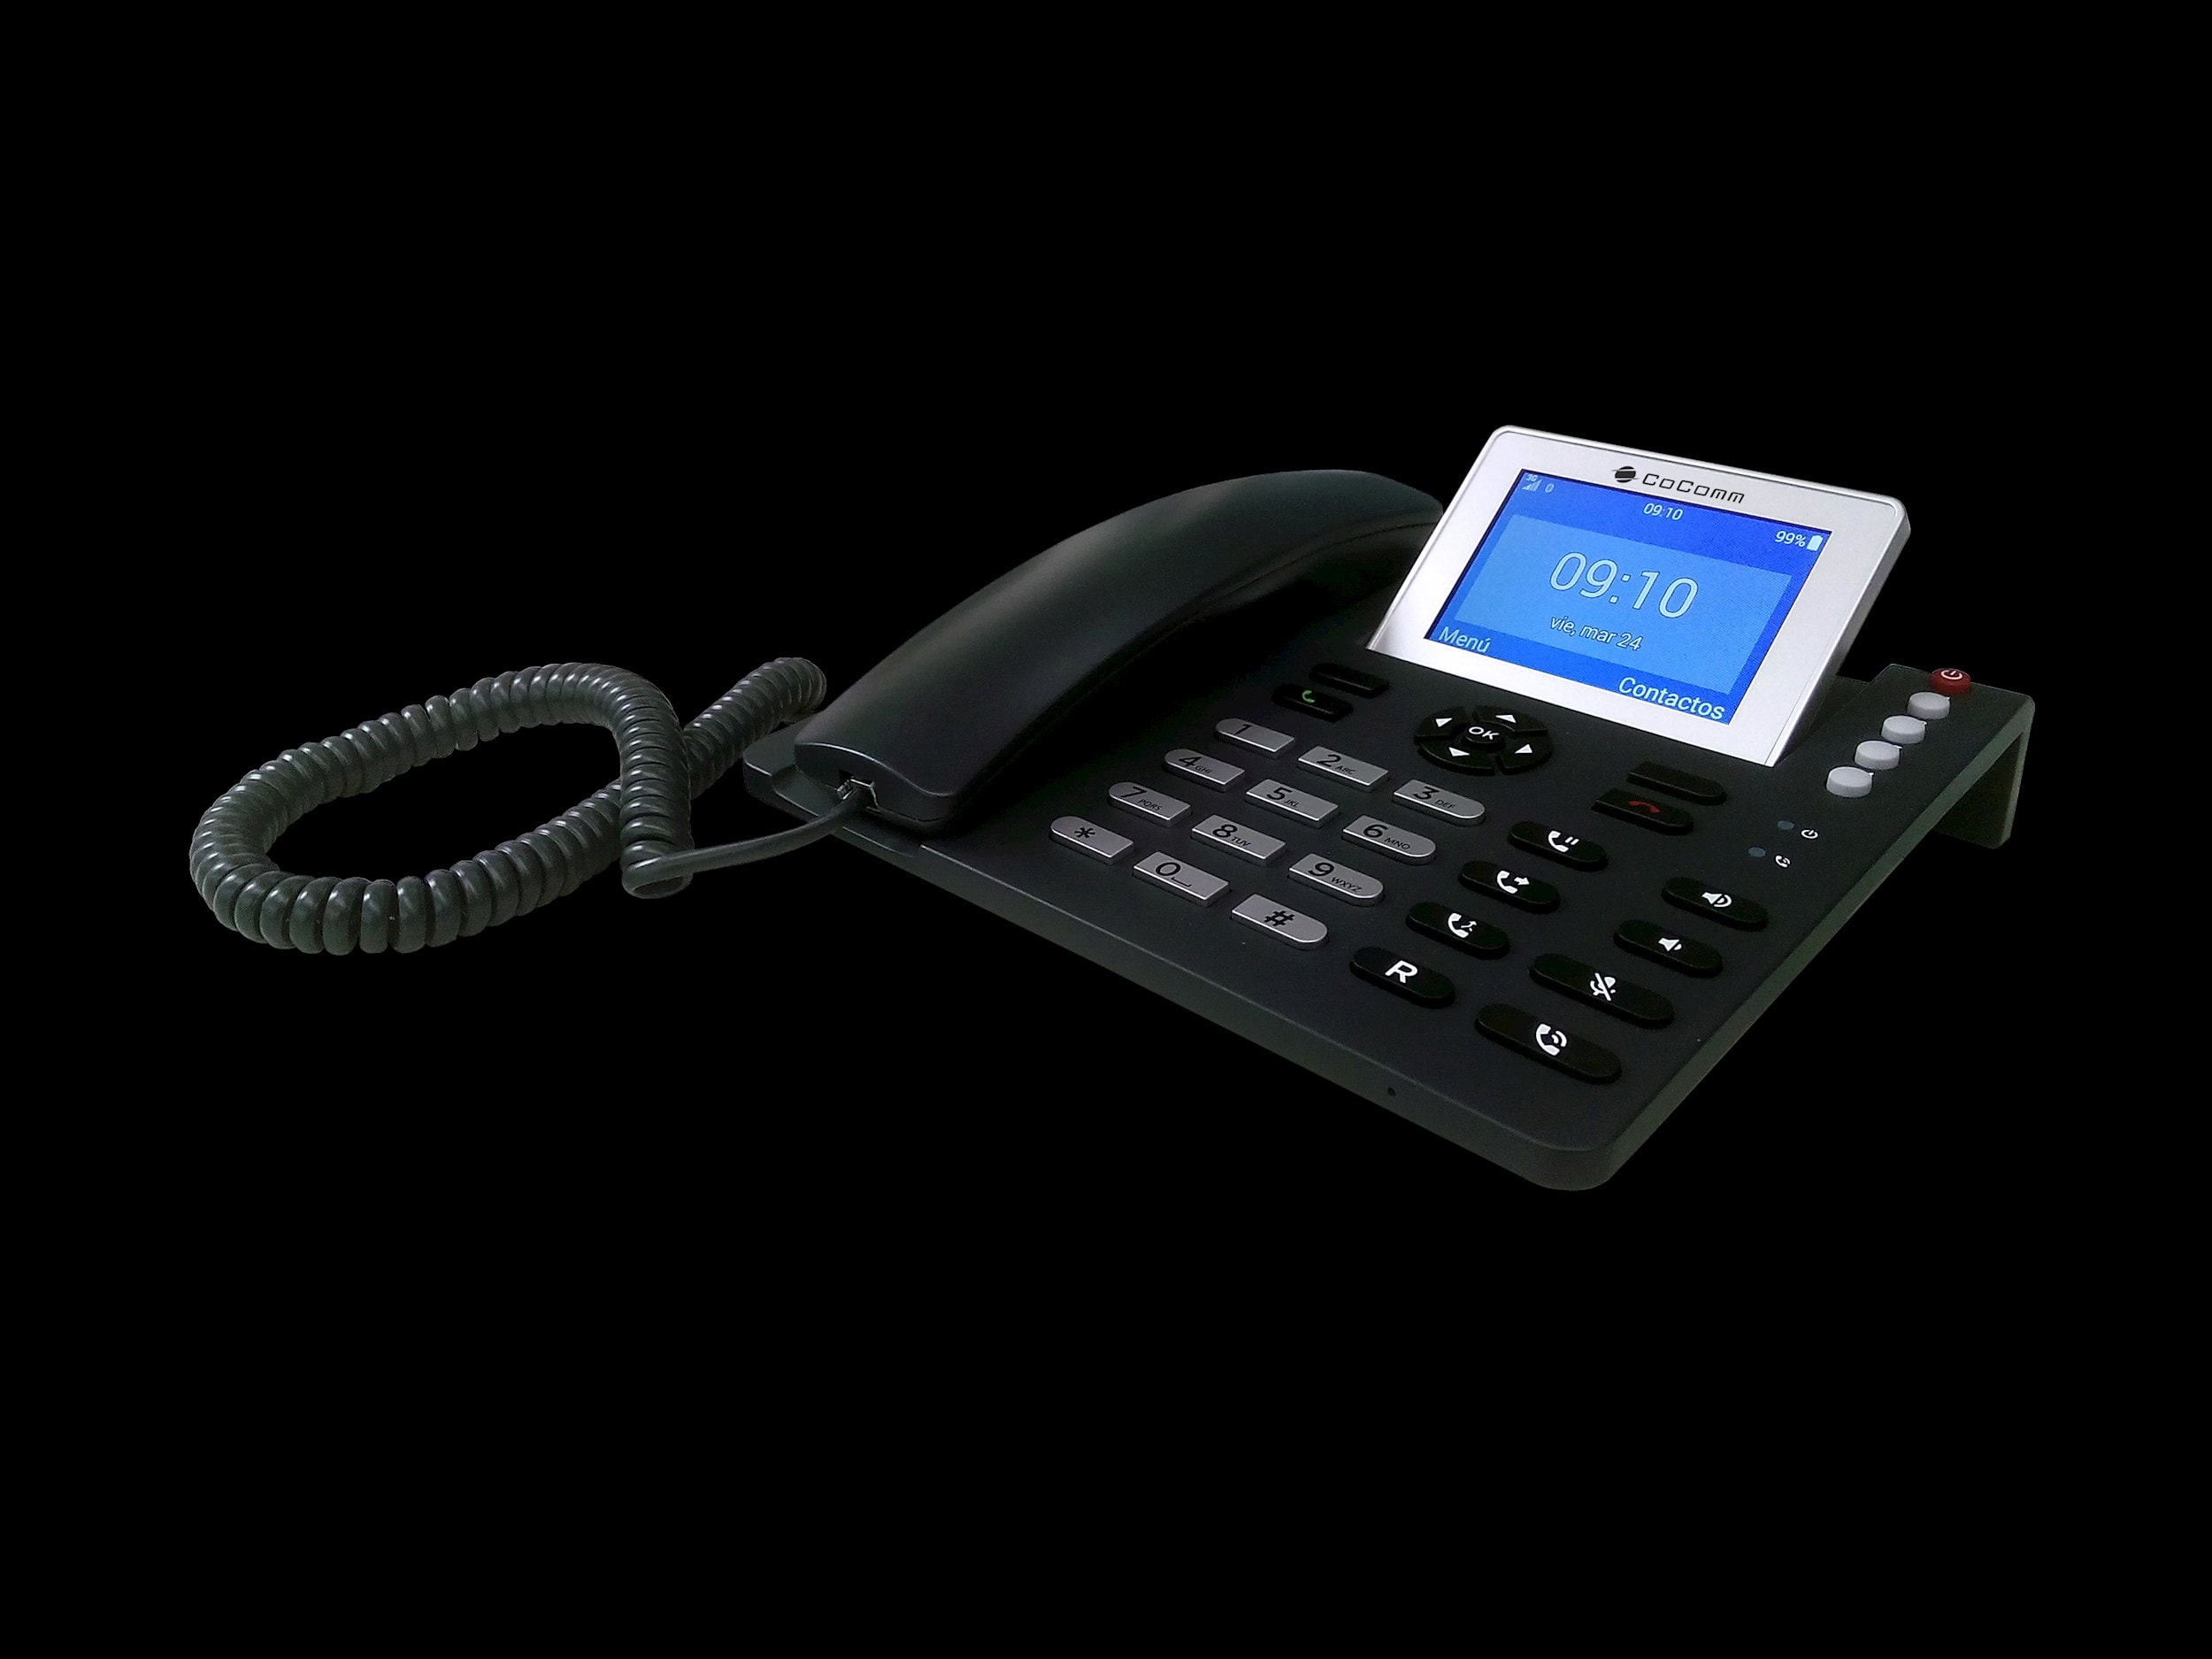 COCOMM - F700 telephone fixe 3g bluetooth et voix hd pour votre entreprise.